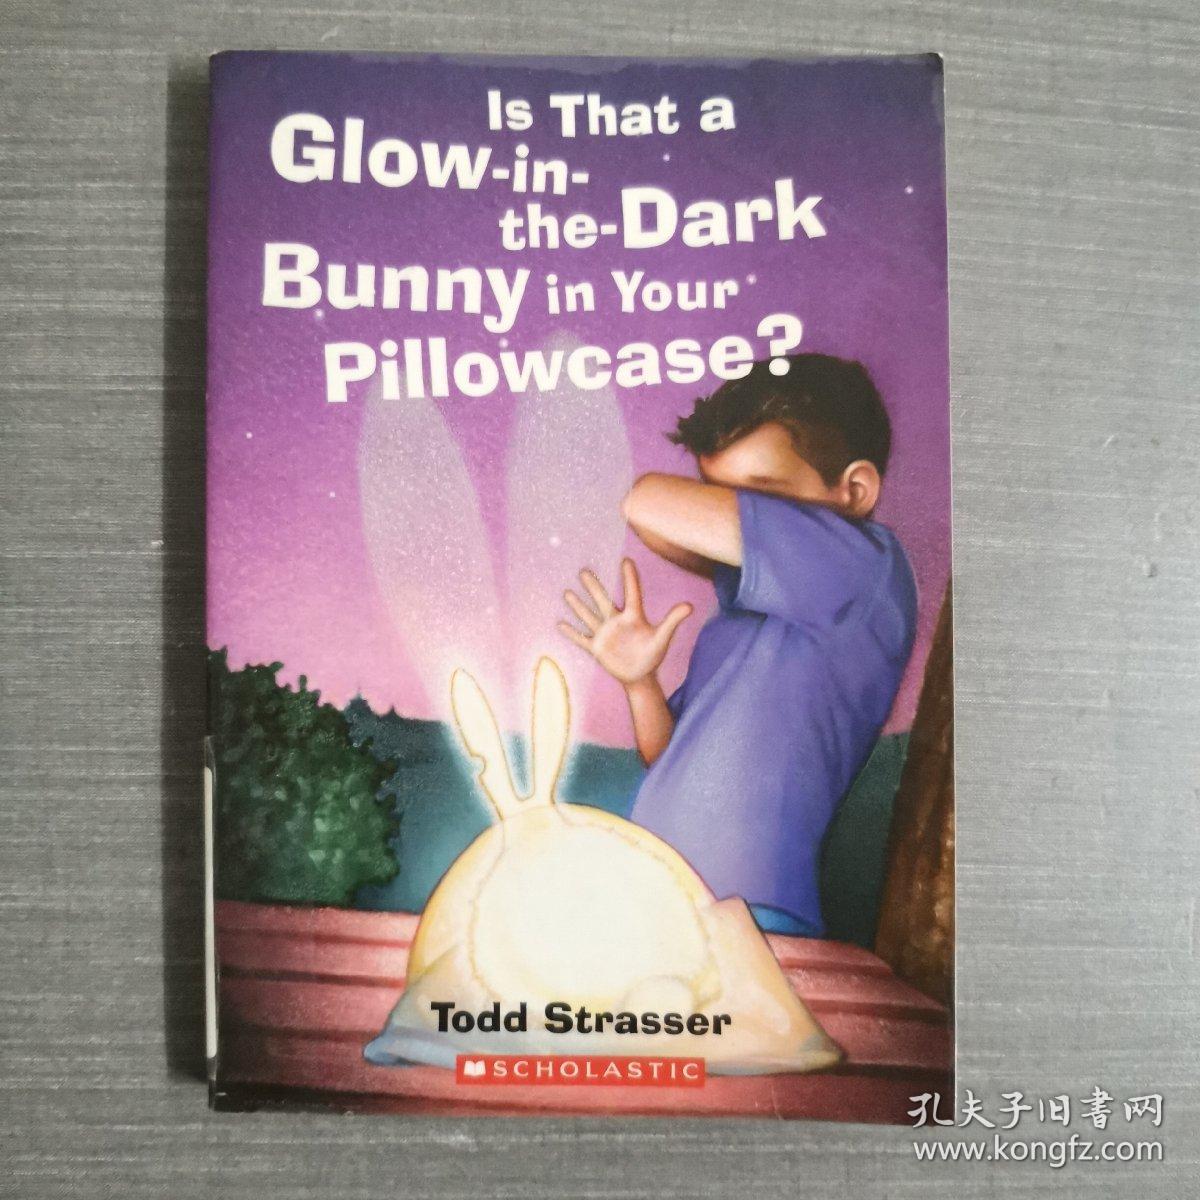 原版英文 ：Is that a glow-in-the-dark bunny in your pillowcase? Todd Strasser